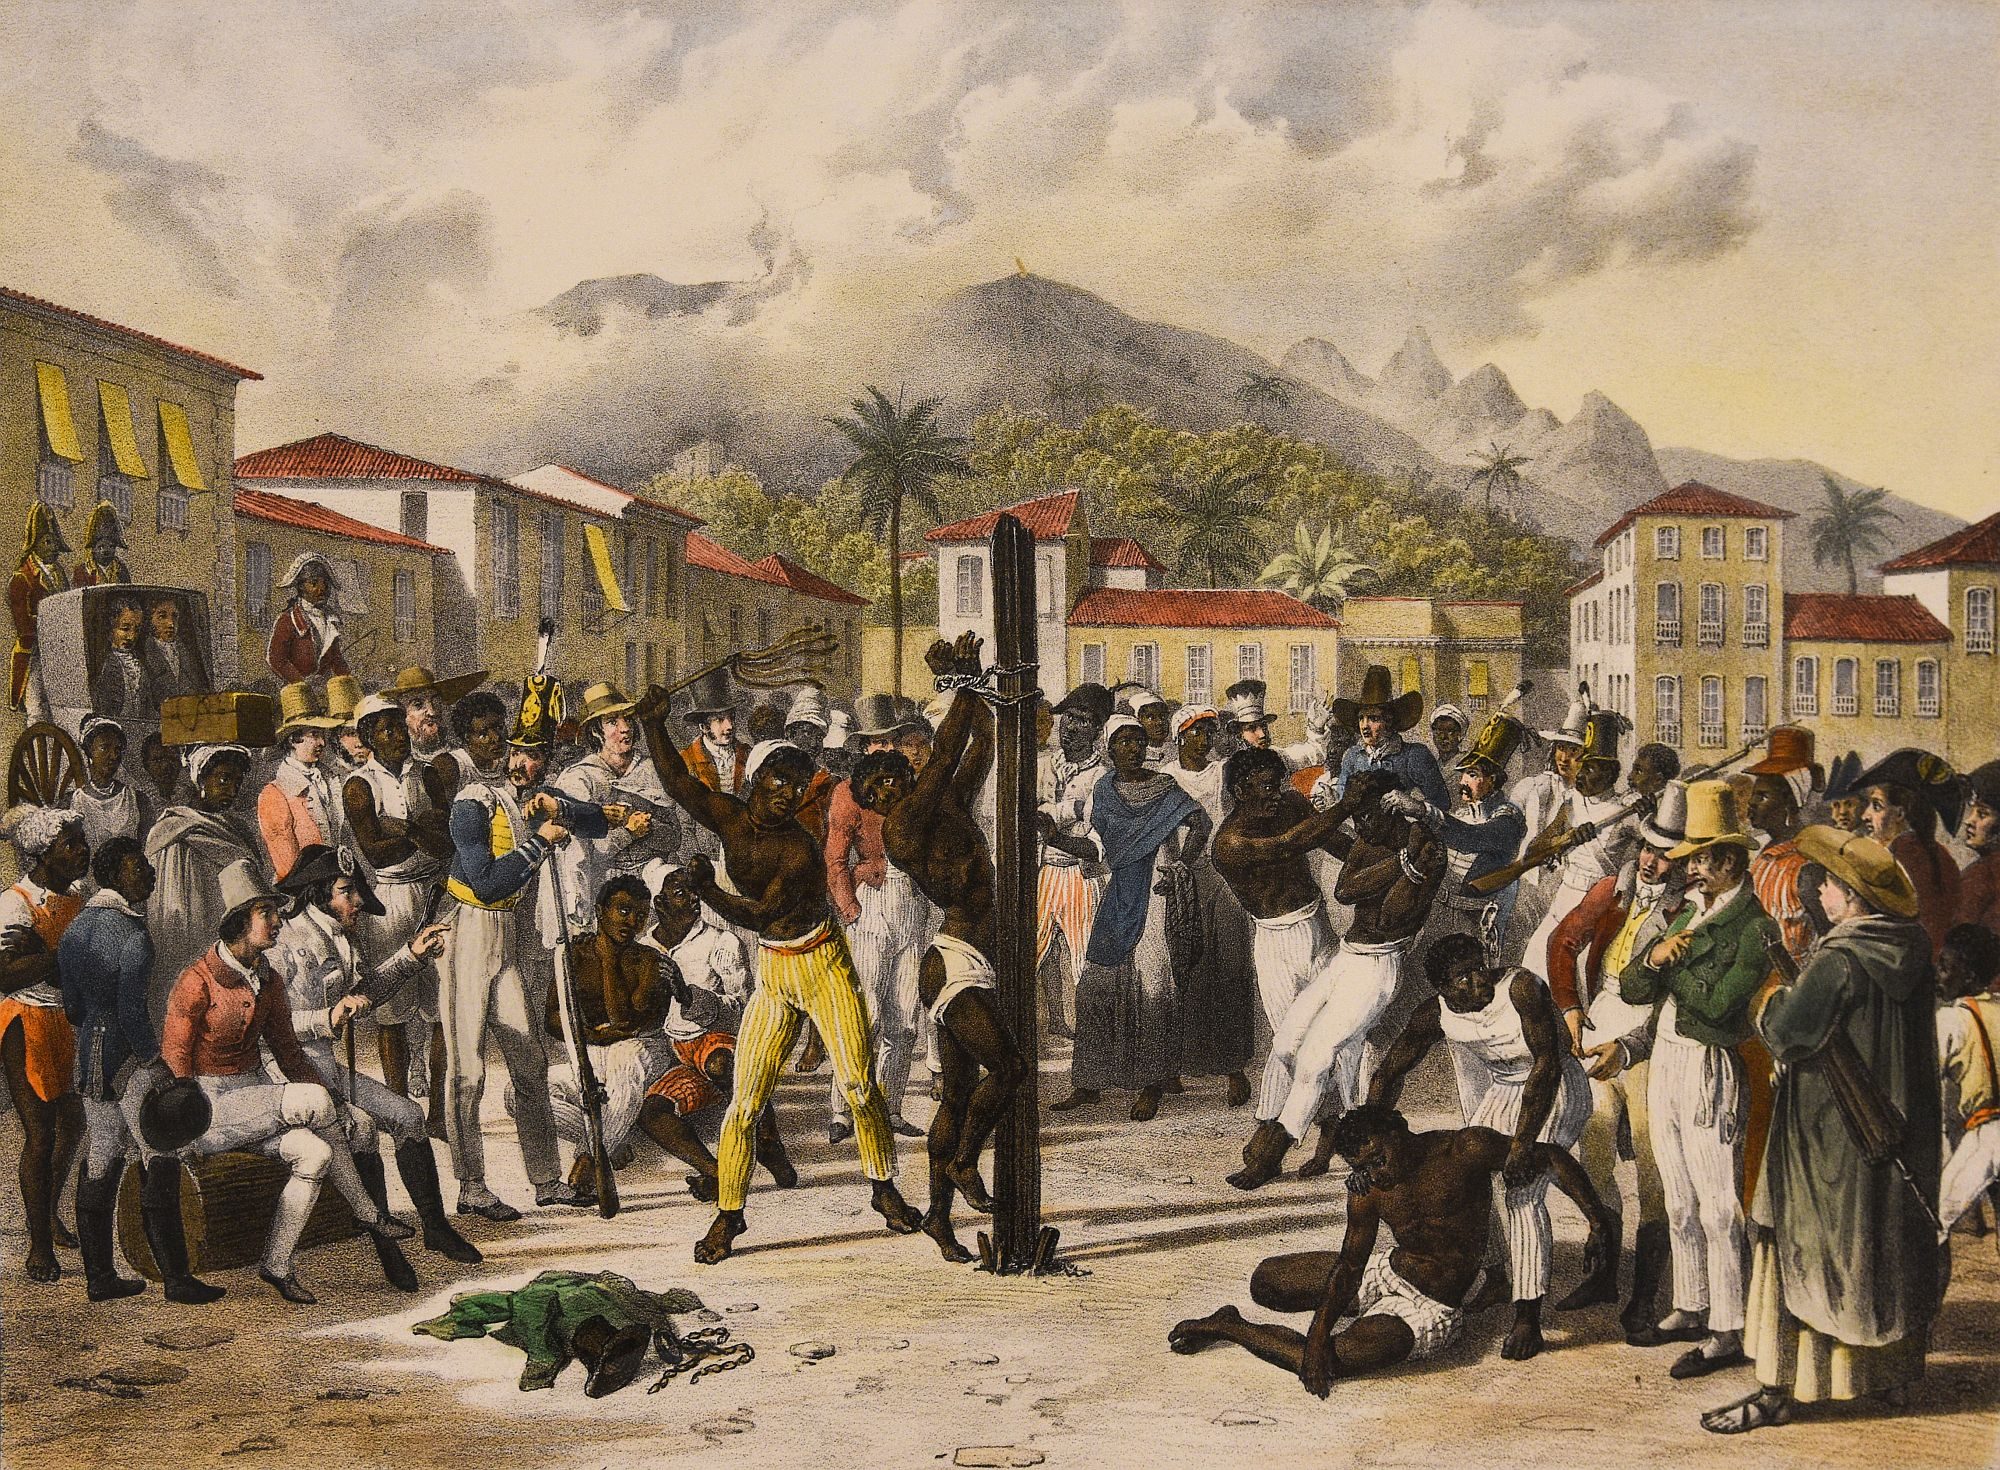 Slavery in Brazil by German painter Johann Moritz Rugendas, Voyage Pittoresque Dans Le Brésil